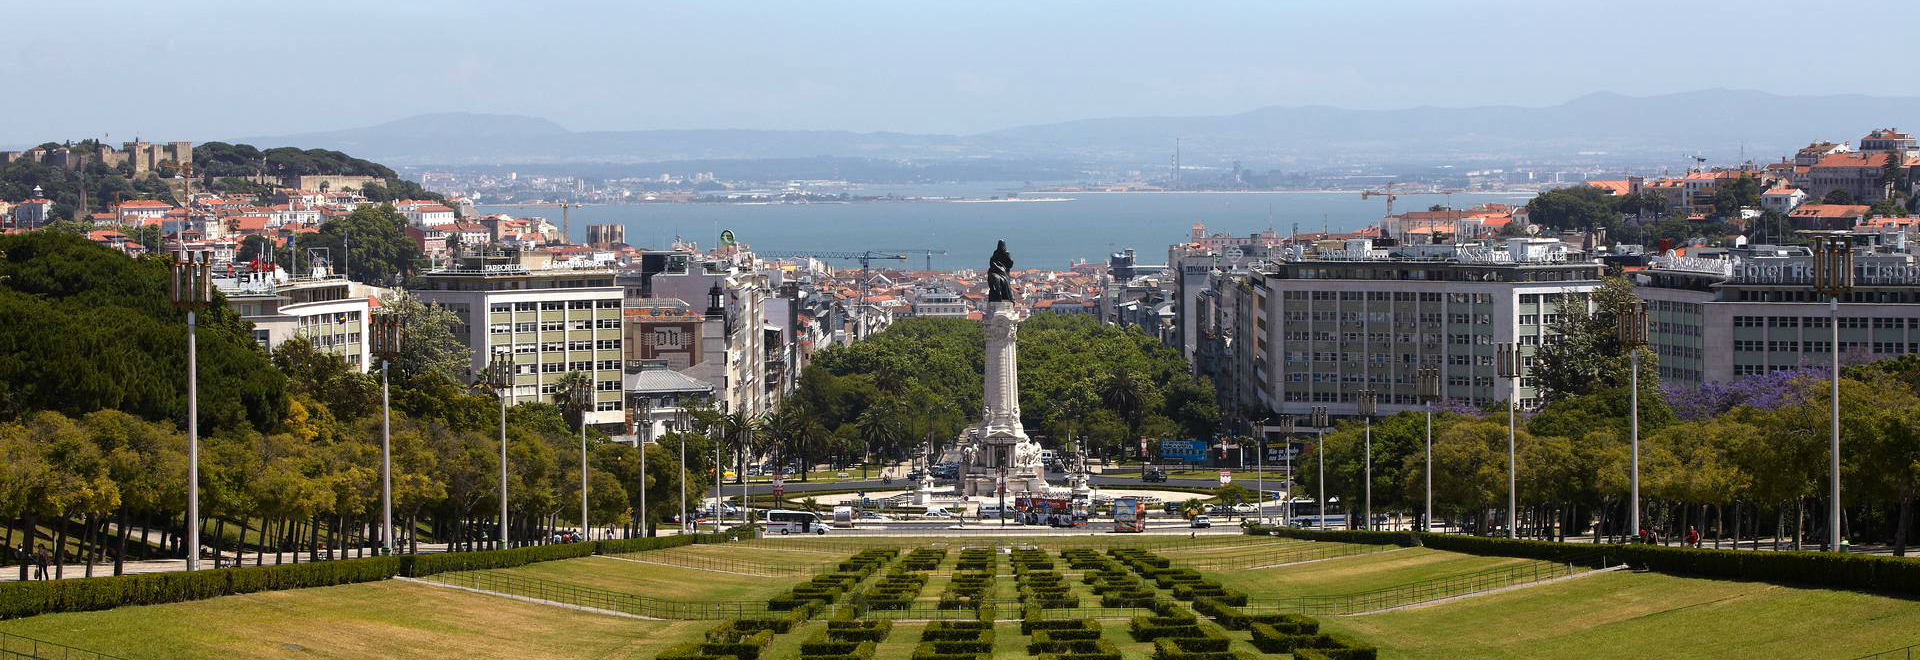 Was in Lissabon zu besuchen?